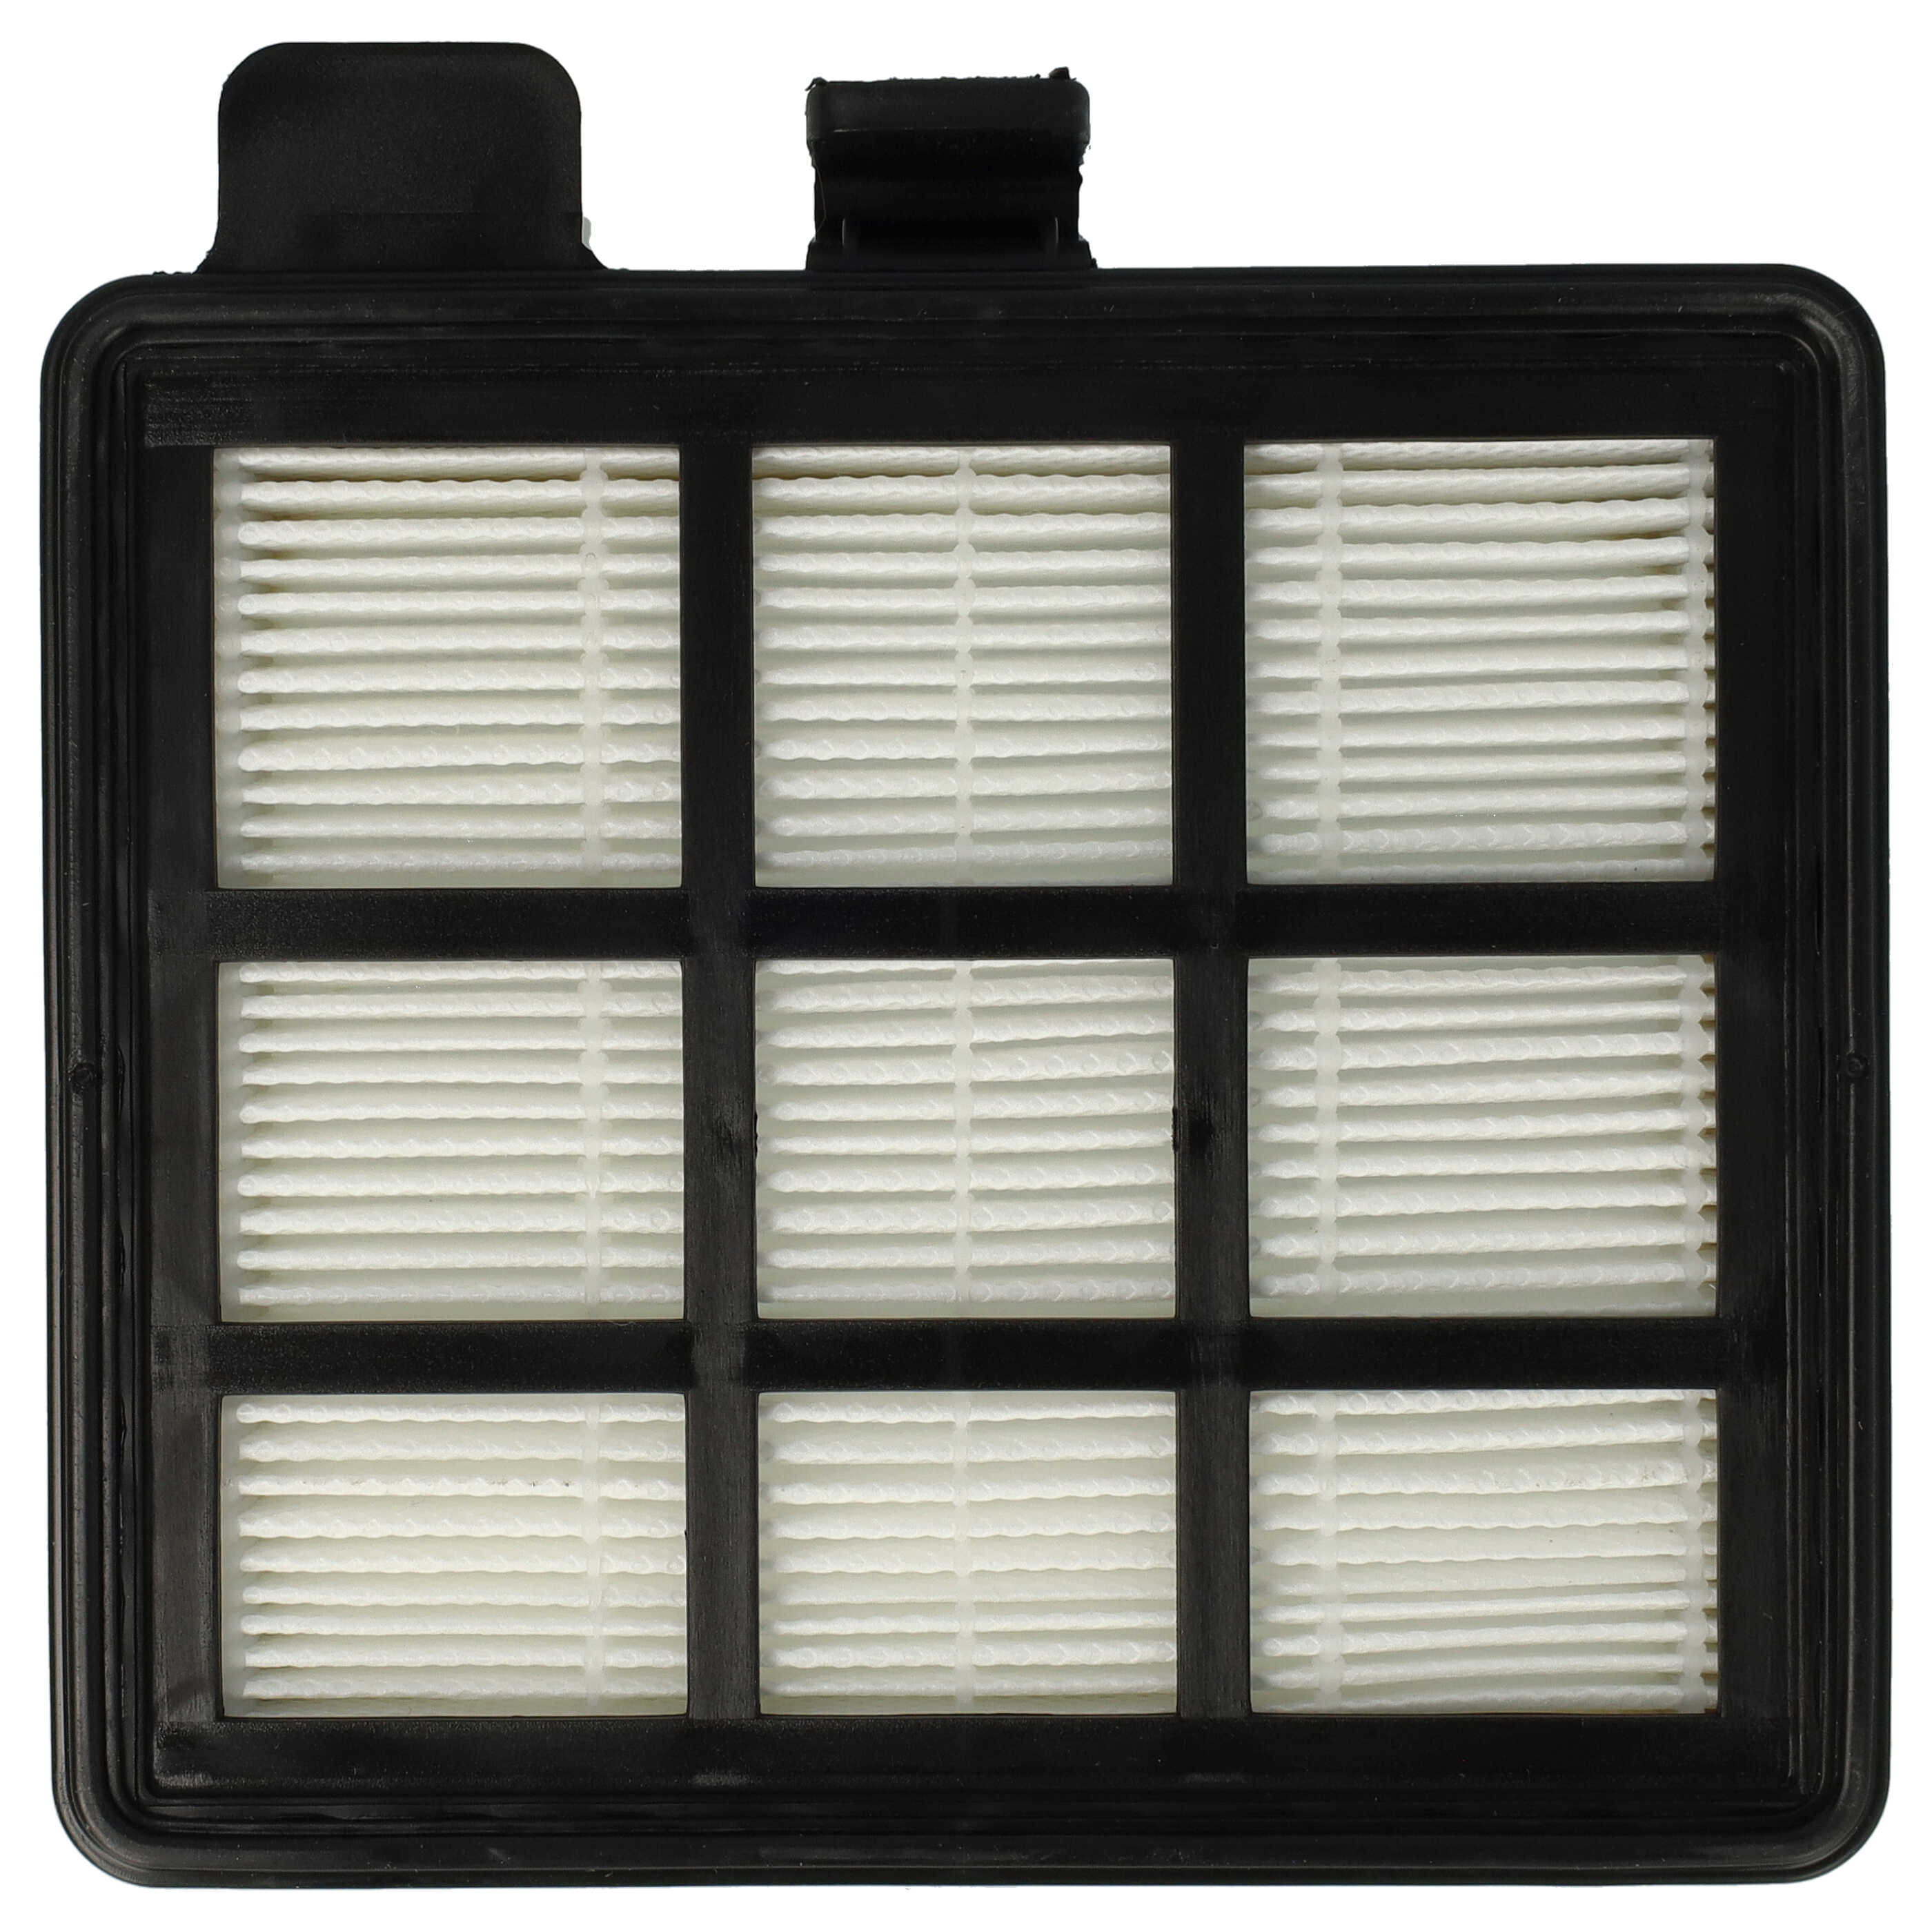 1x HEPA filter replaces Ariete AT5185394210, 00P274100AR0, 00P274110AR0 for Ariete Vacuum Cleaner